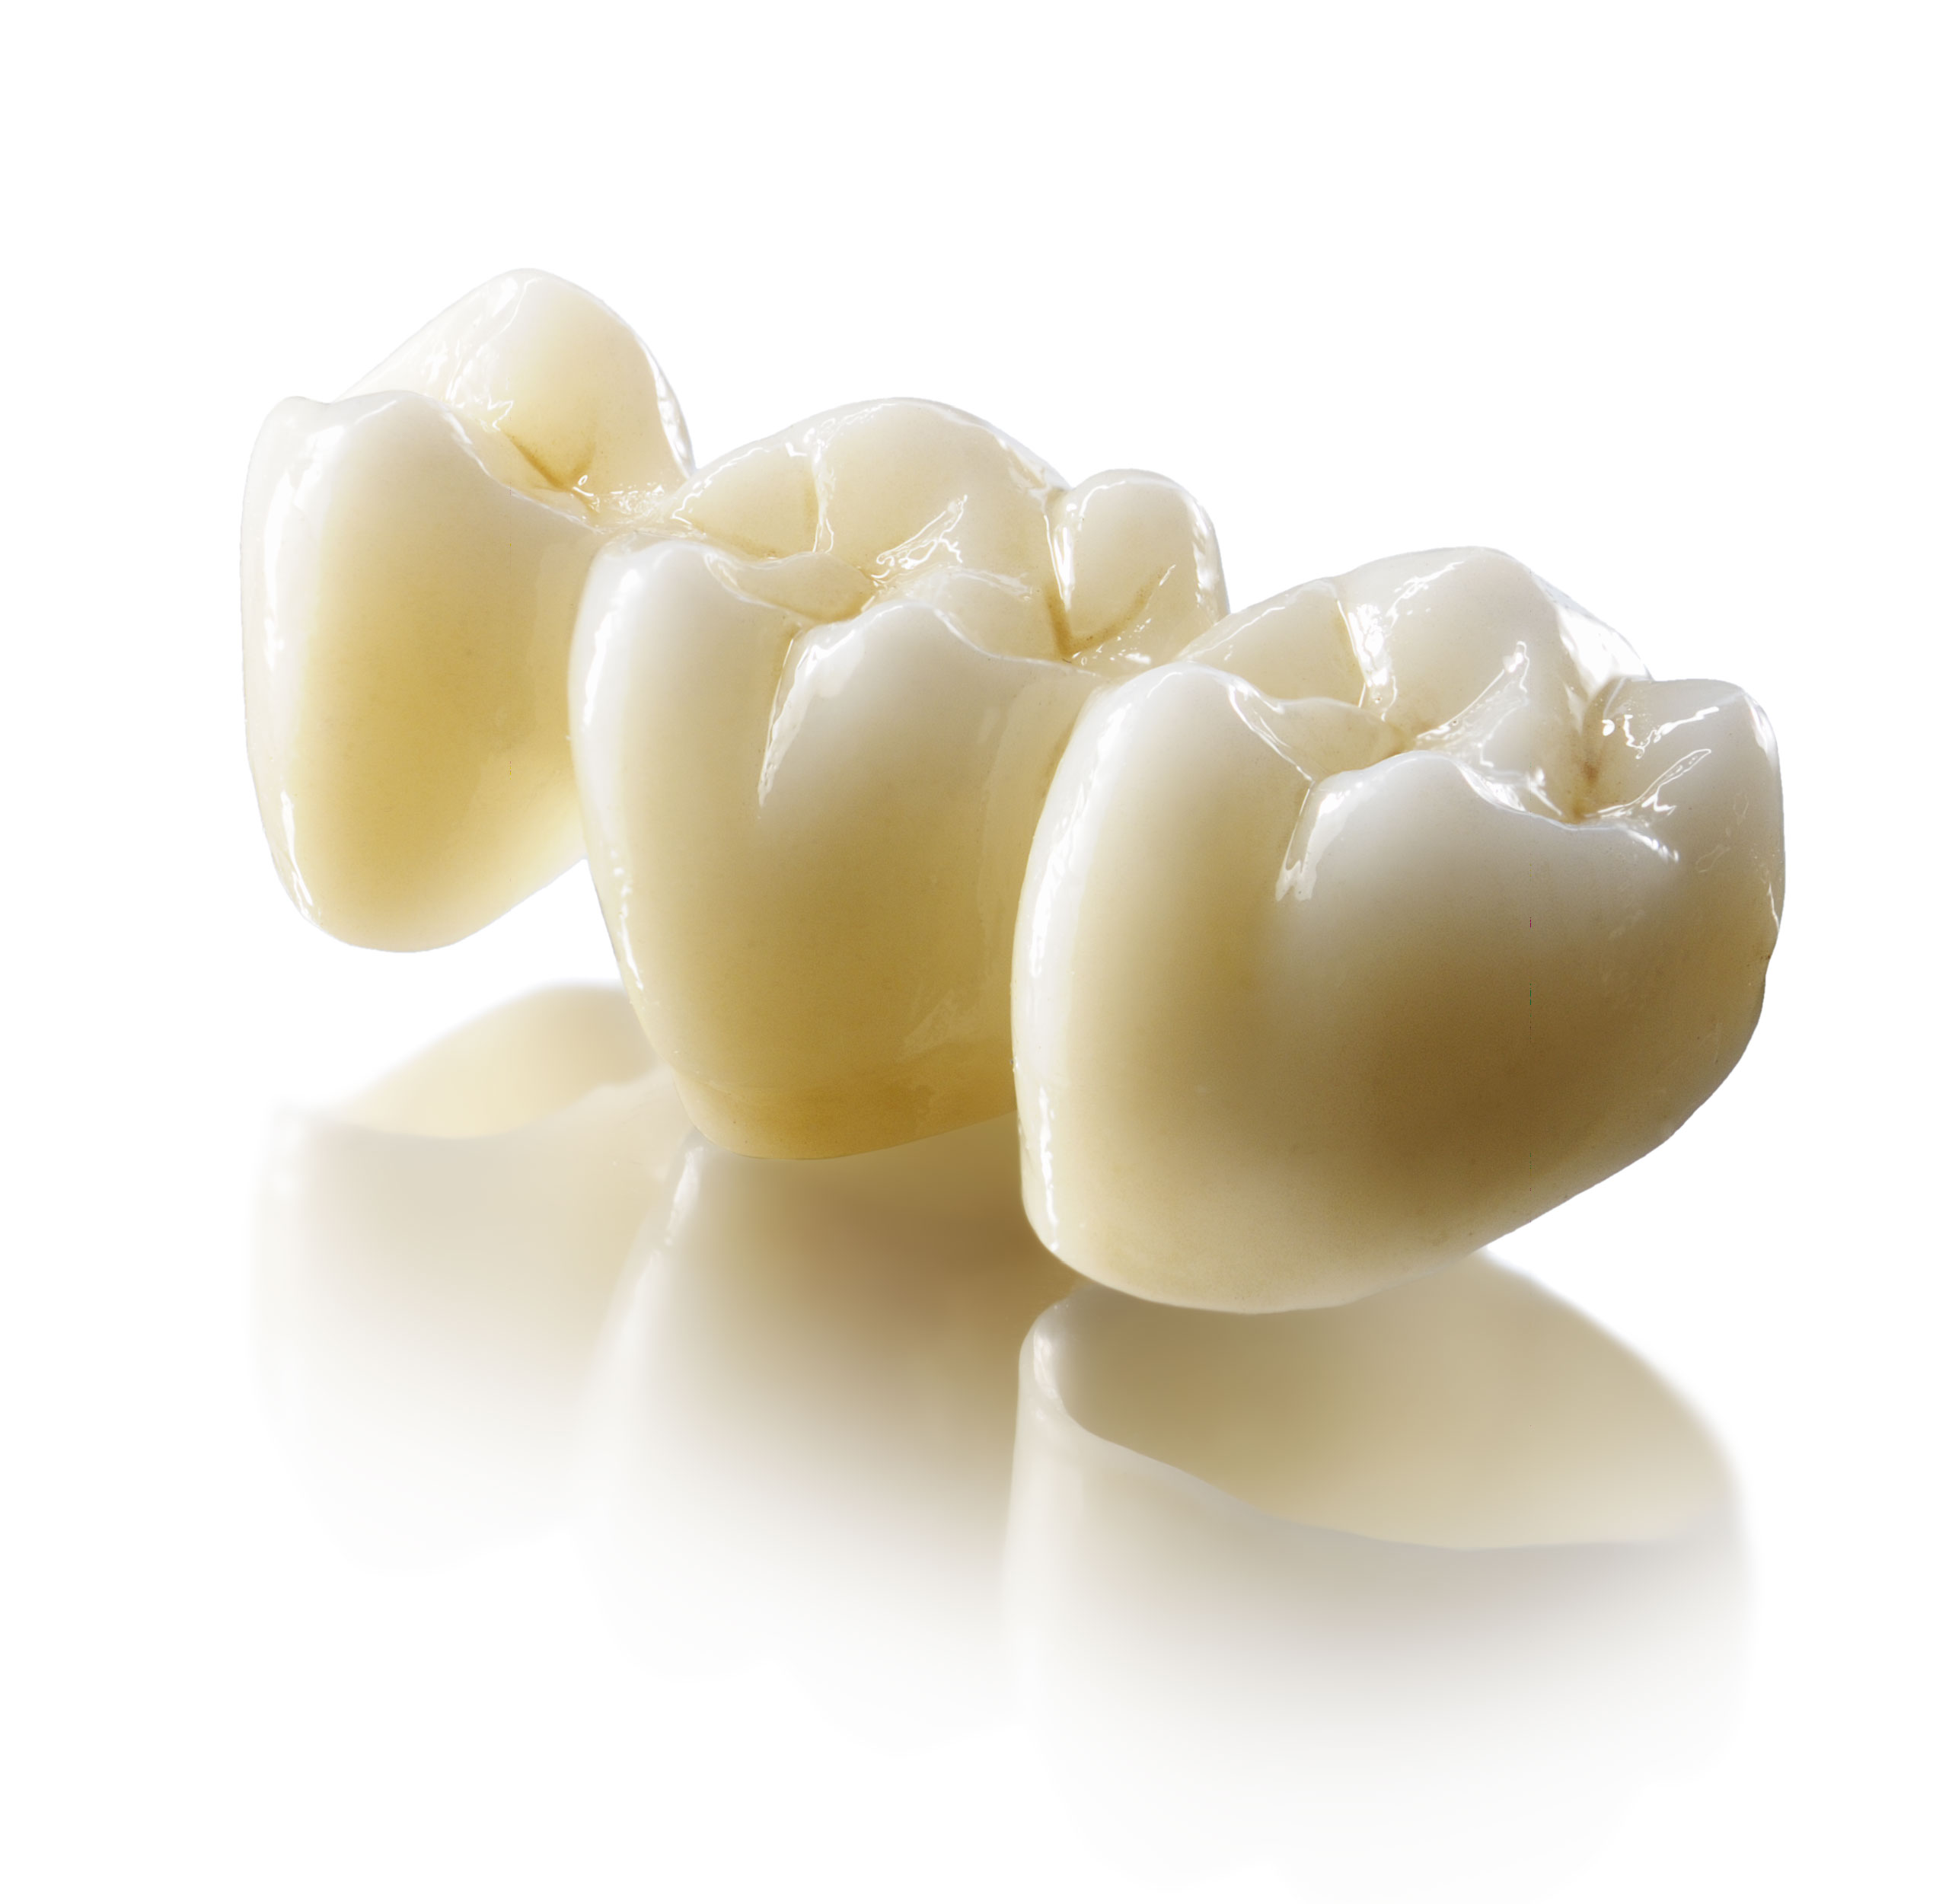 Зубные протезы из диоксида циркония — будущее стоматологии